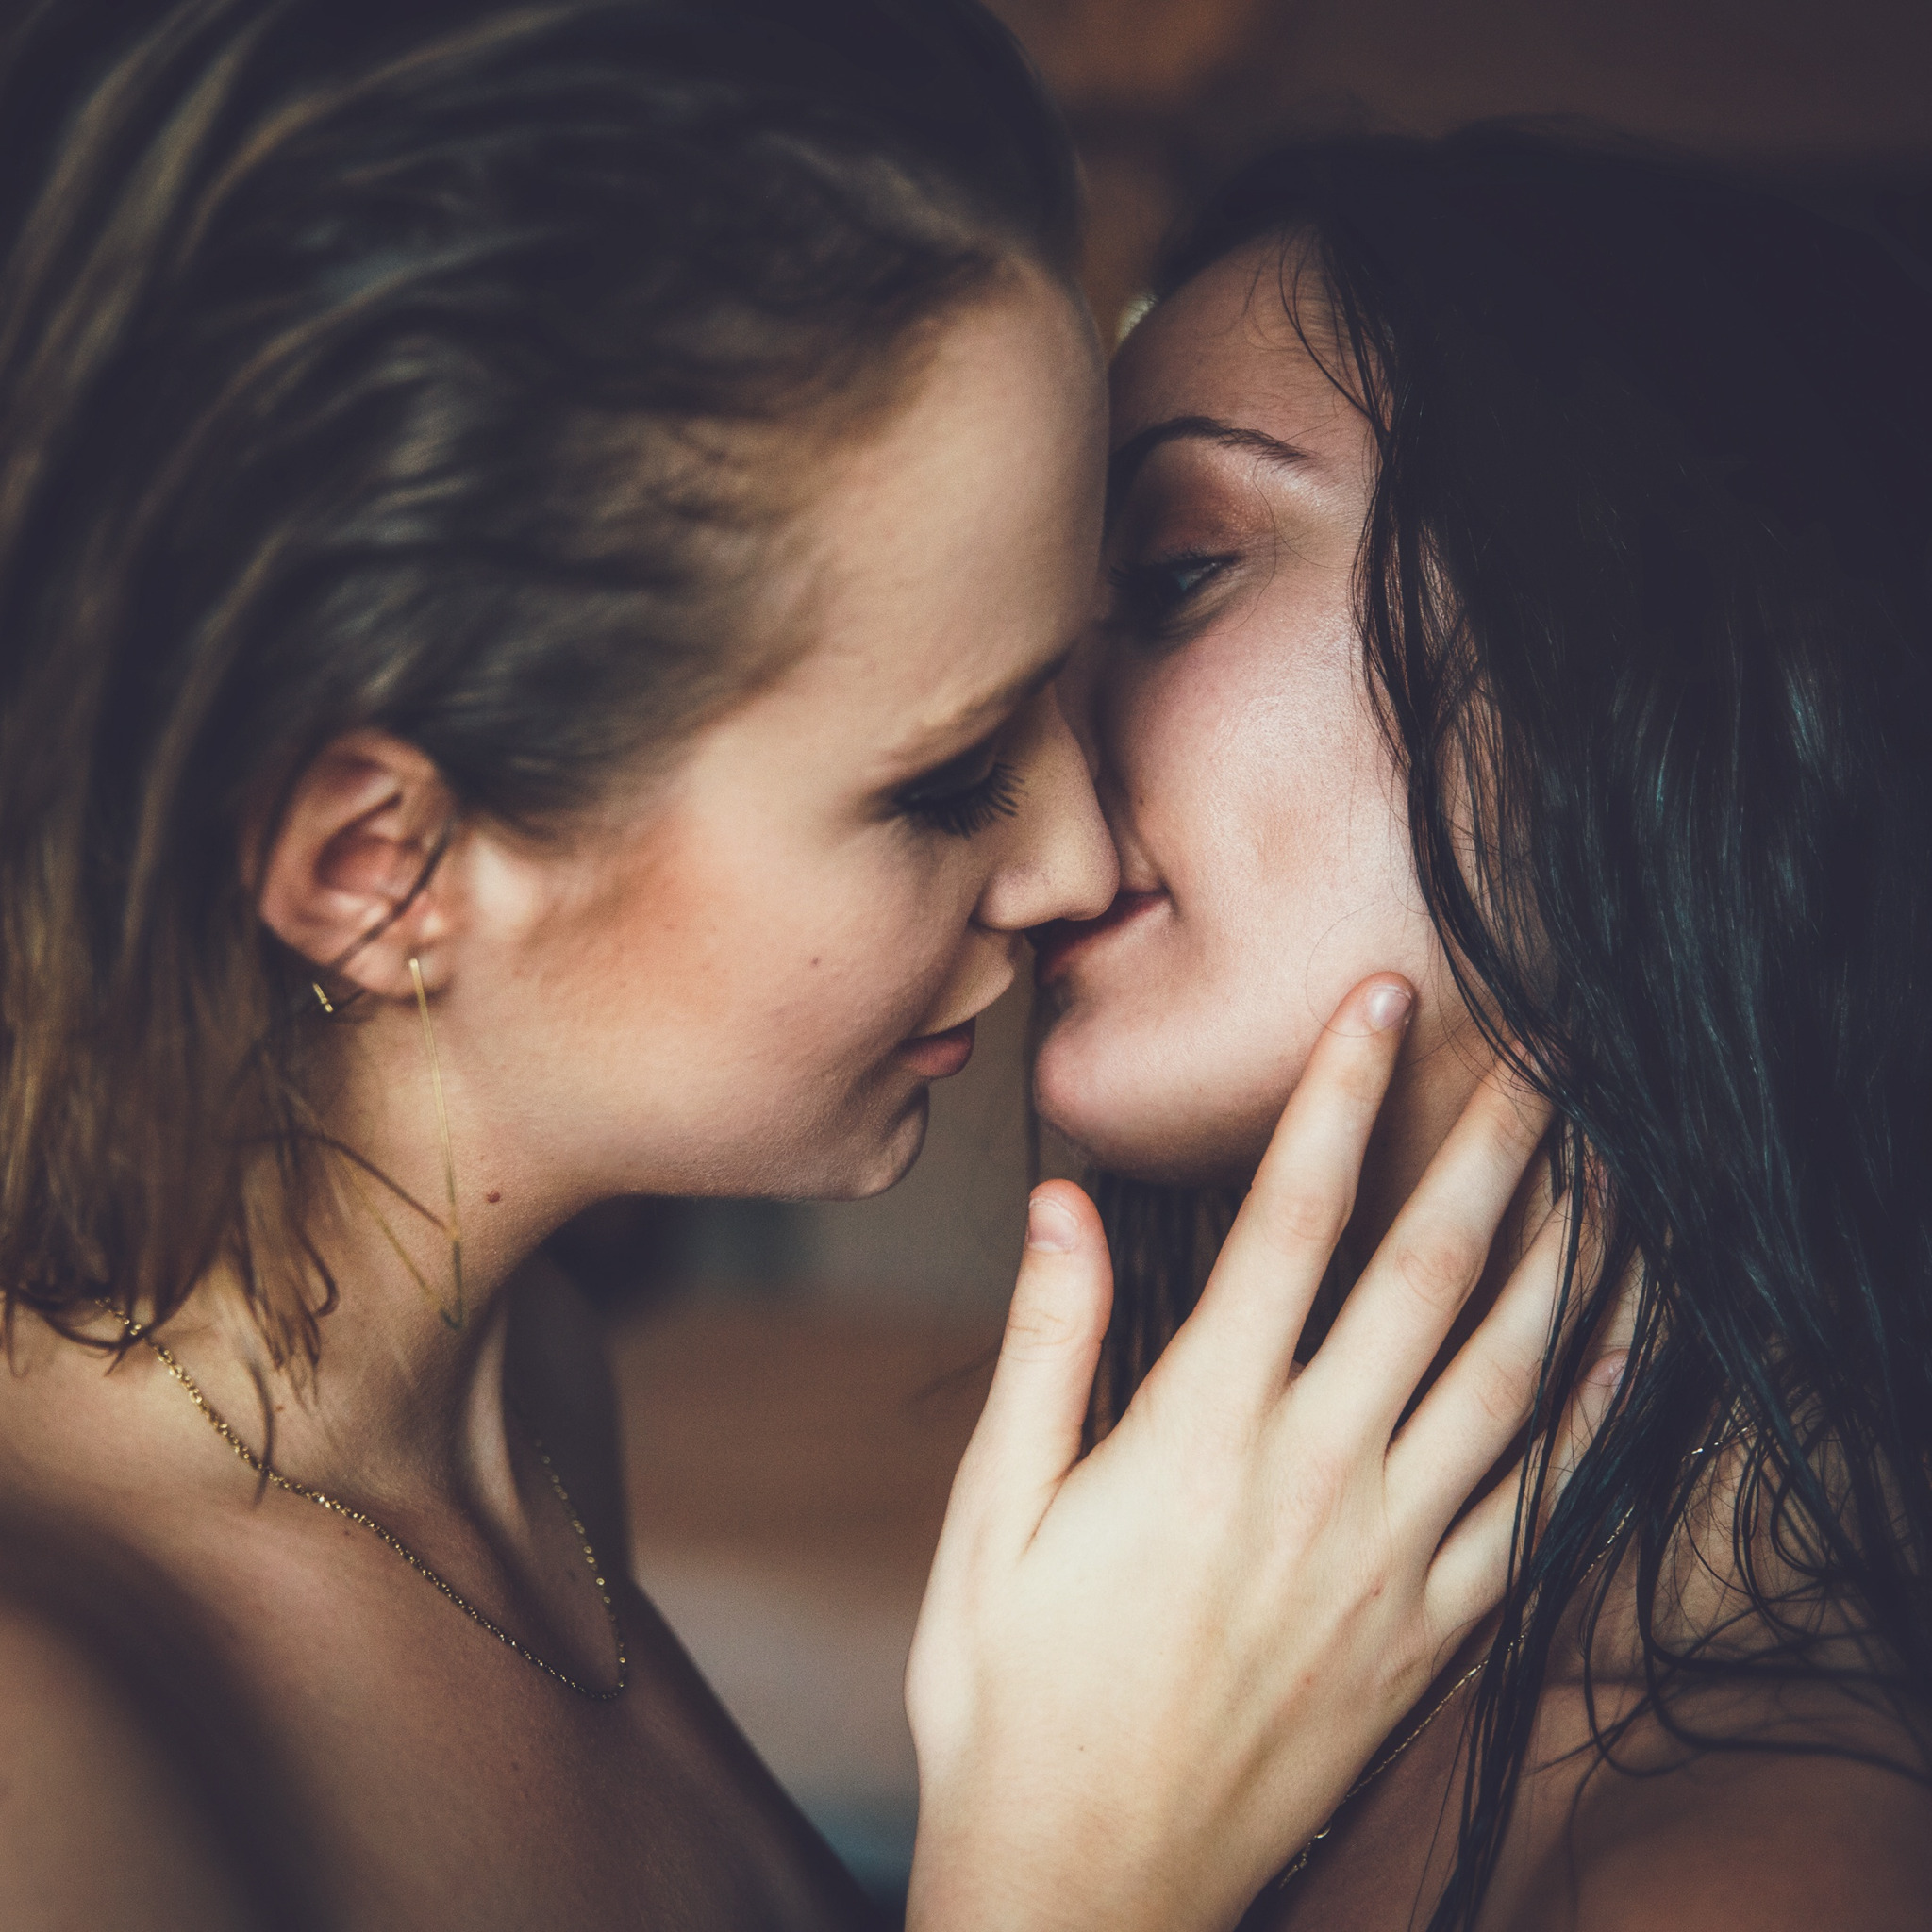 Нежный поцелуй двух девушек